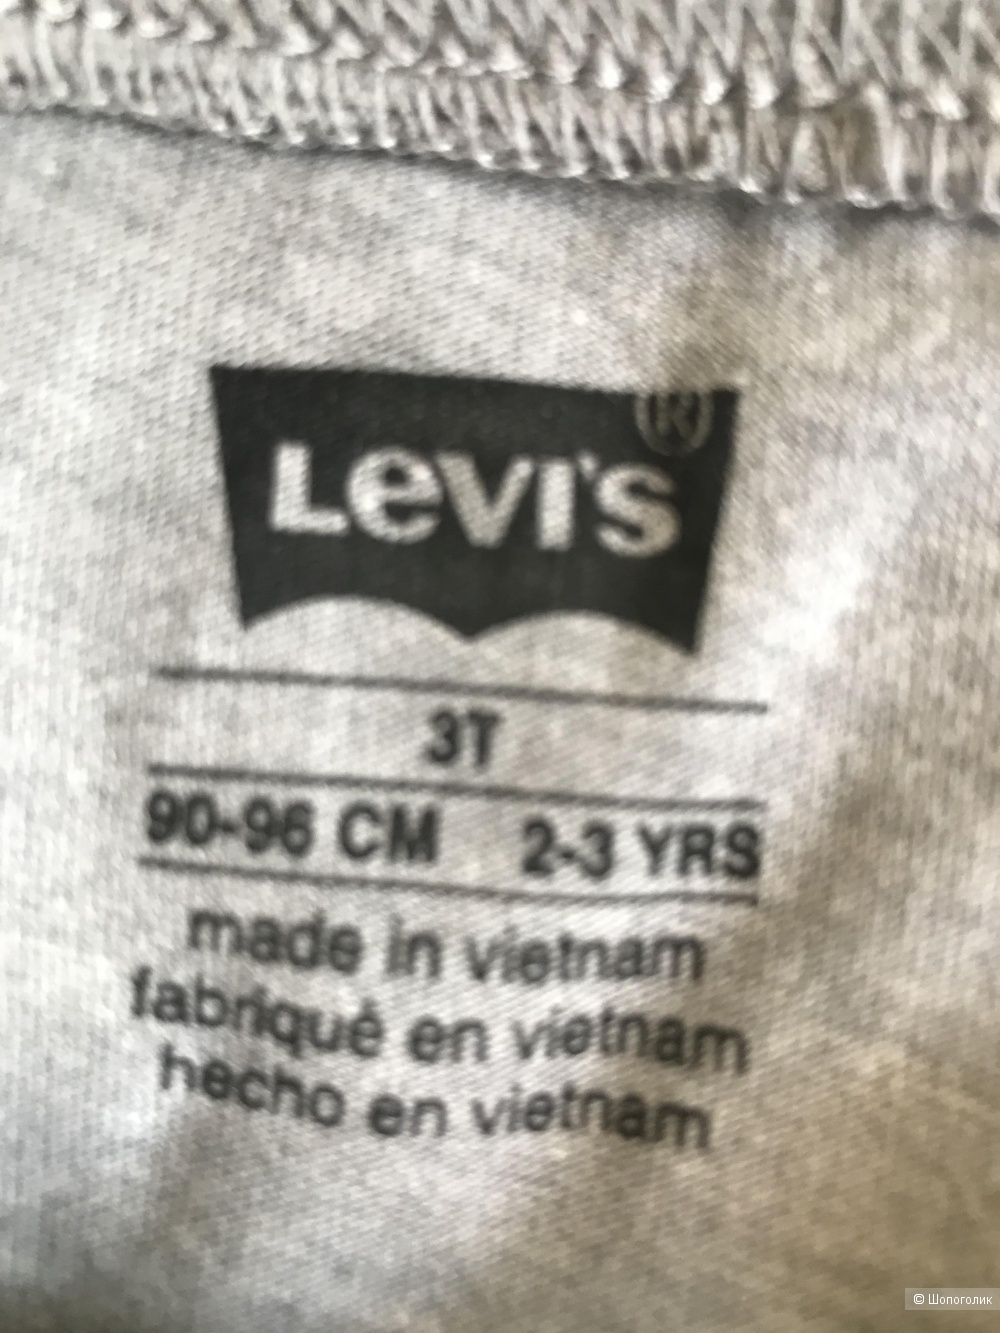 Детская футболка, Levi’s, 86-92 раз